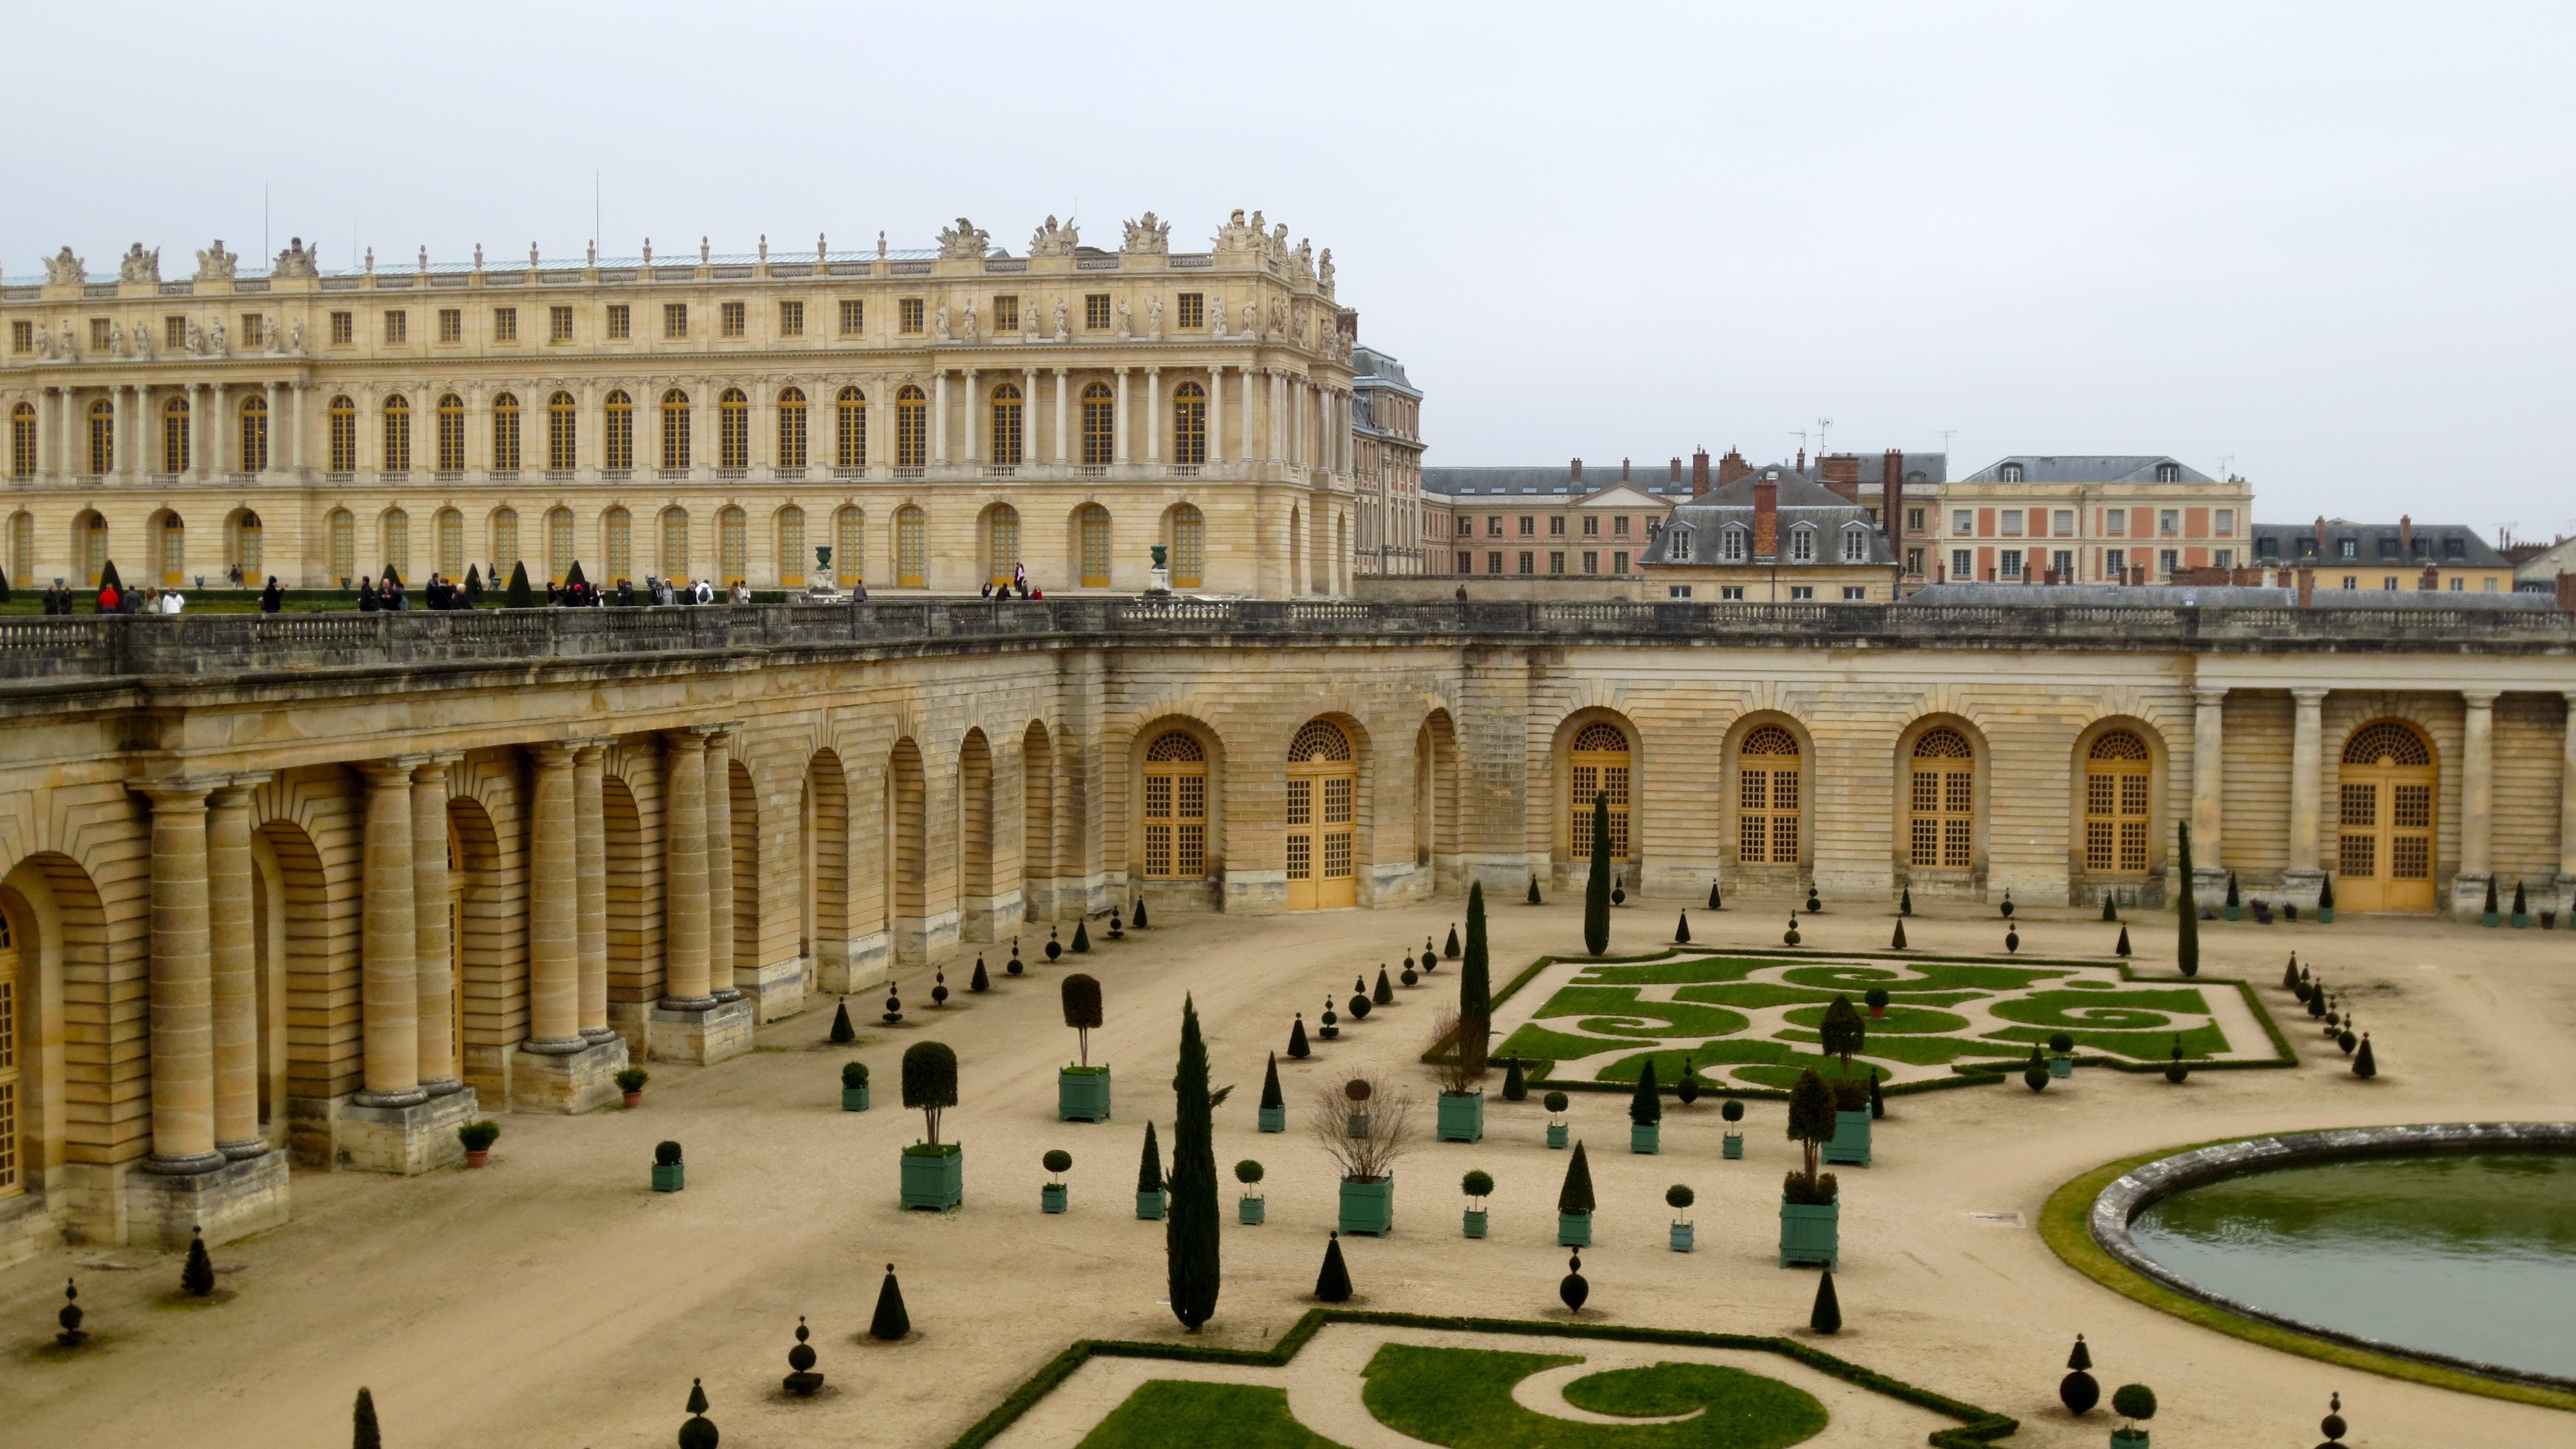 Время версаль. Версальский дворец дворцы Франции. Версаль (Франция), 1668-1689. Большой дворец в Версале.